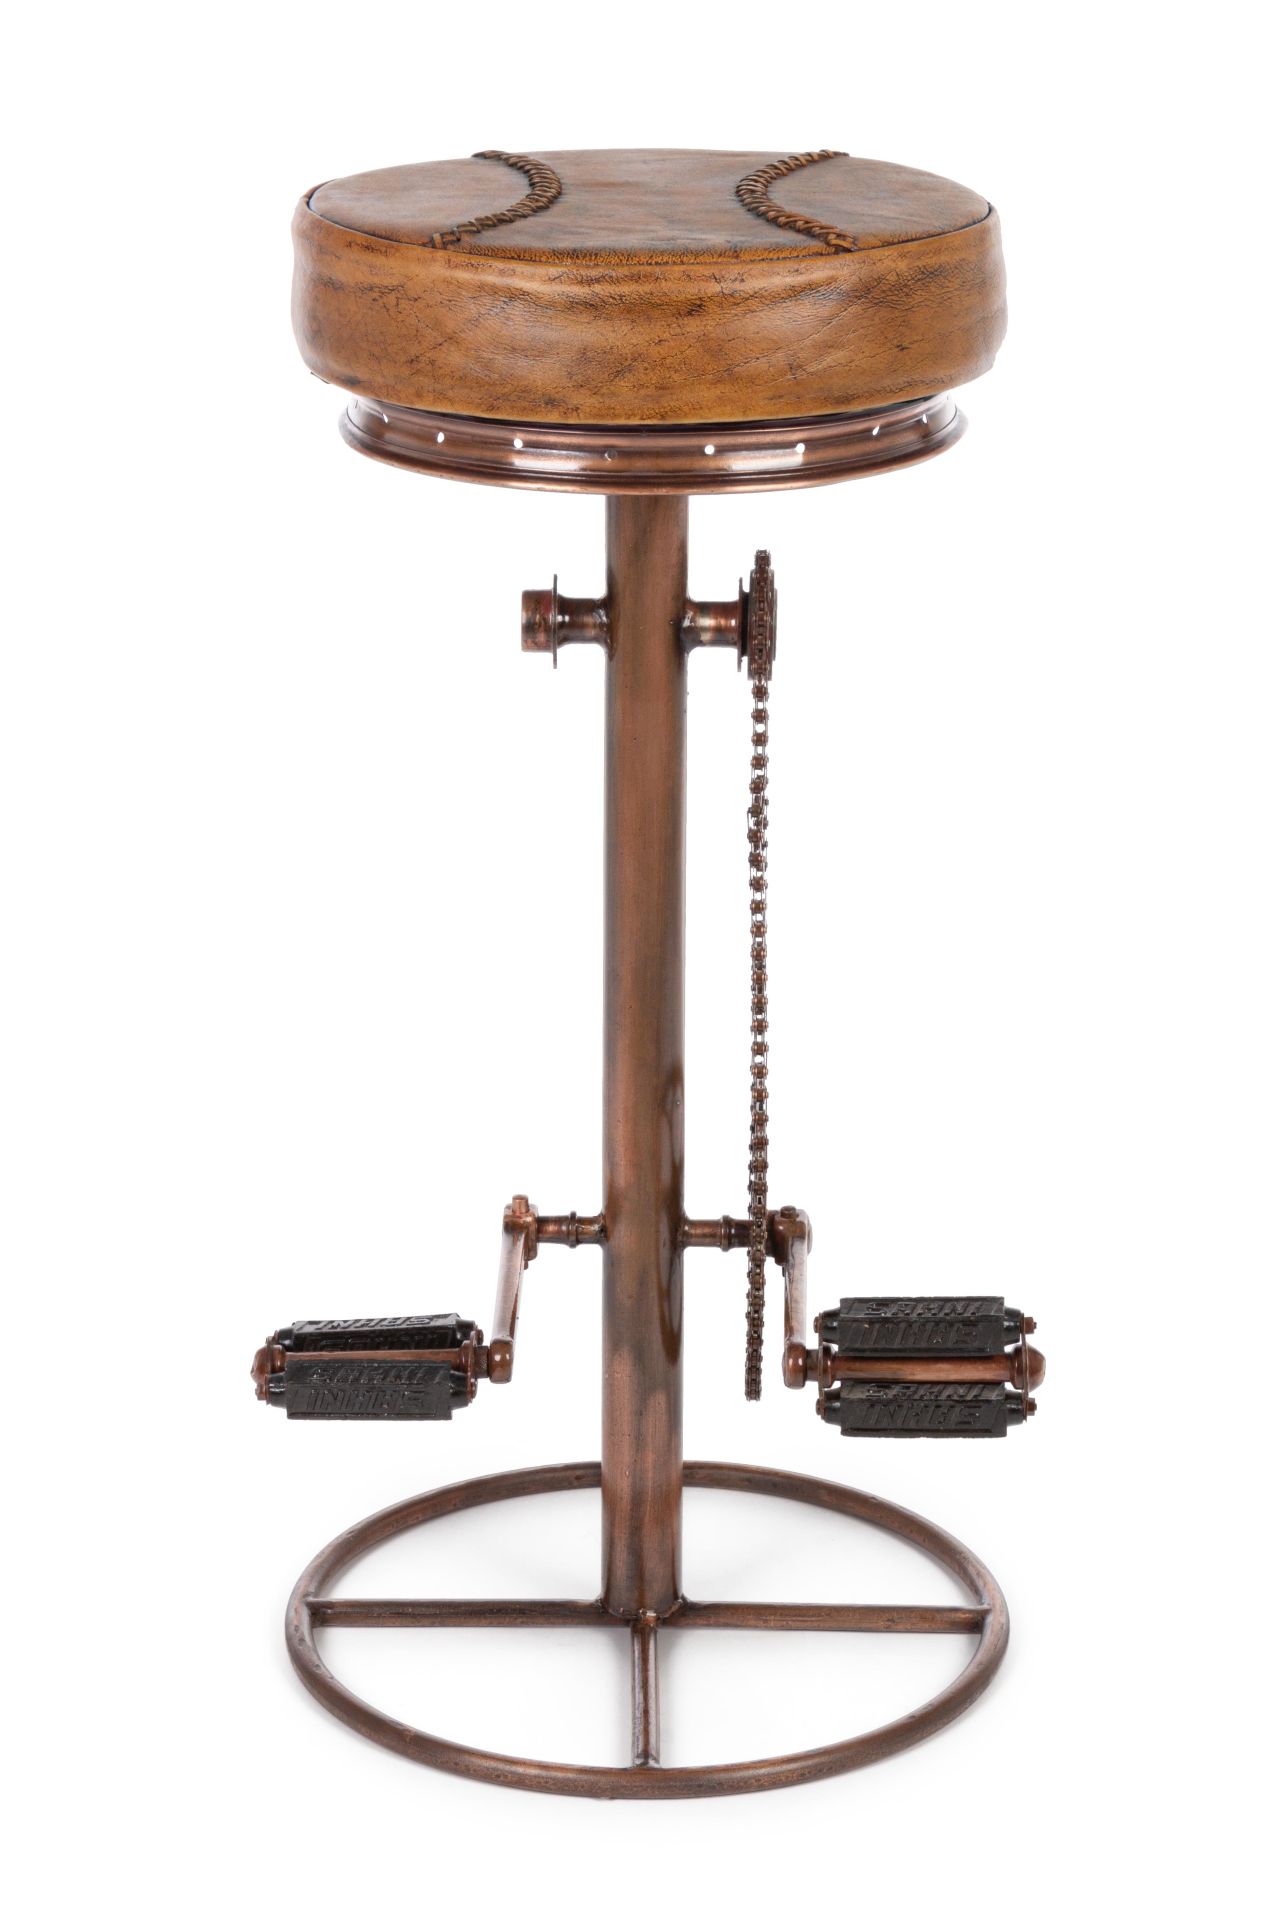 Der Barhocker Cycle überzeugt mit seinem industriellem Design. Gefertigt wurde er aus Leder, welches einen Cognac Farbton besitzt. Das Gestell ist aus Metall und hat eine Bronze Farbe. Die Sitzhöhe des Hockers beträgt 80 cm.